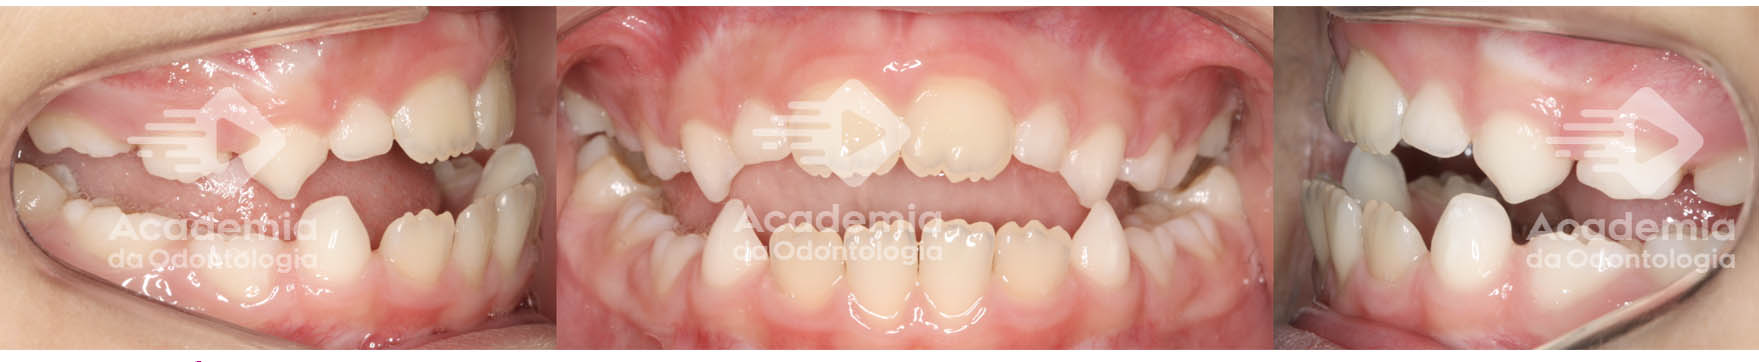 Expansão maxilar: entenda os benefícios da expansão maxilar no tratamento da Classe I, Classe II e Classe III